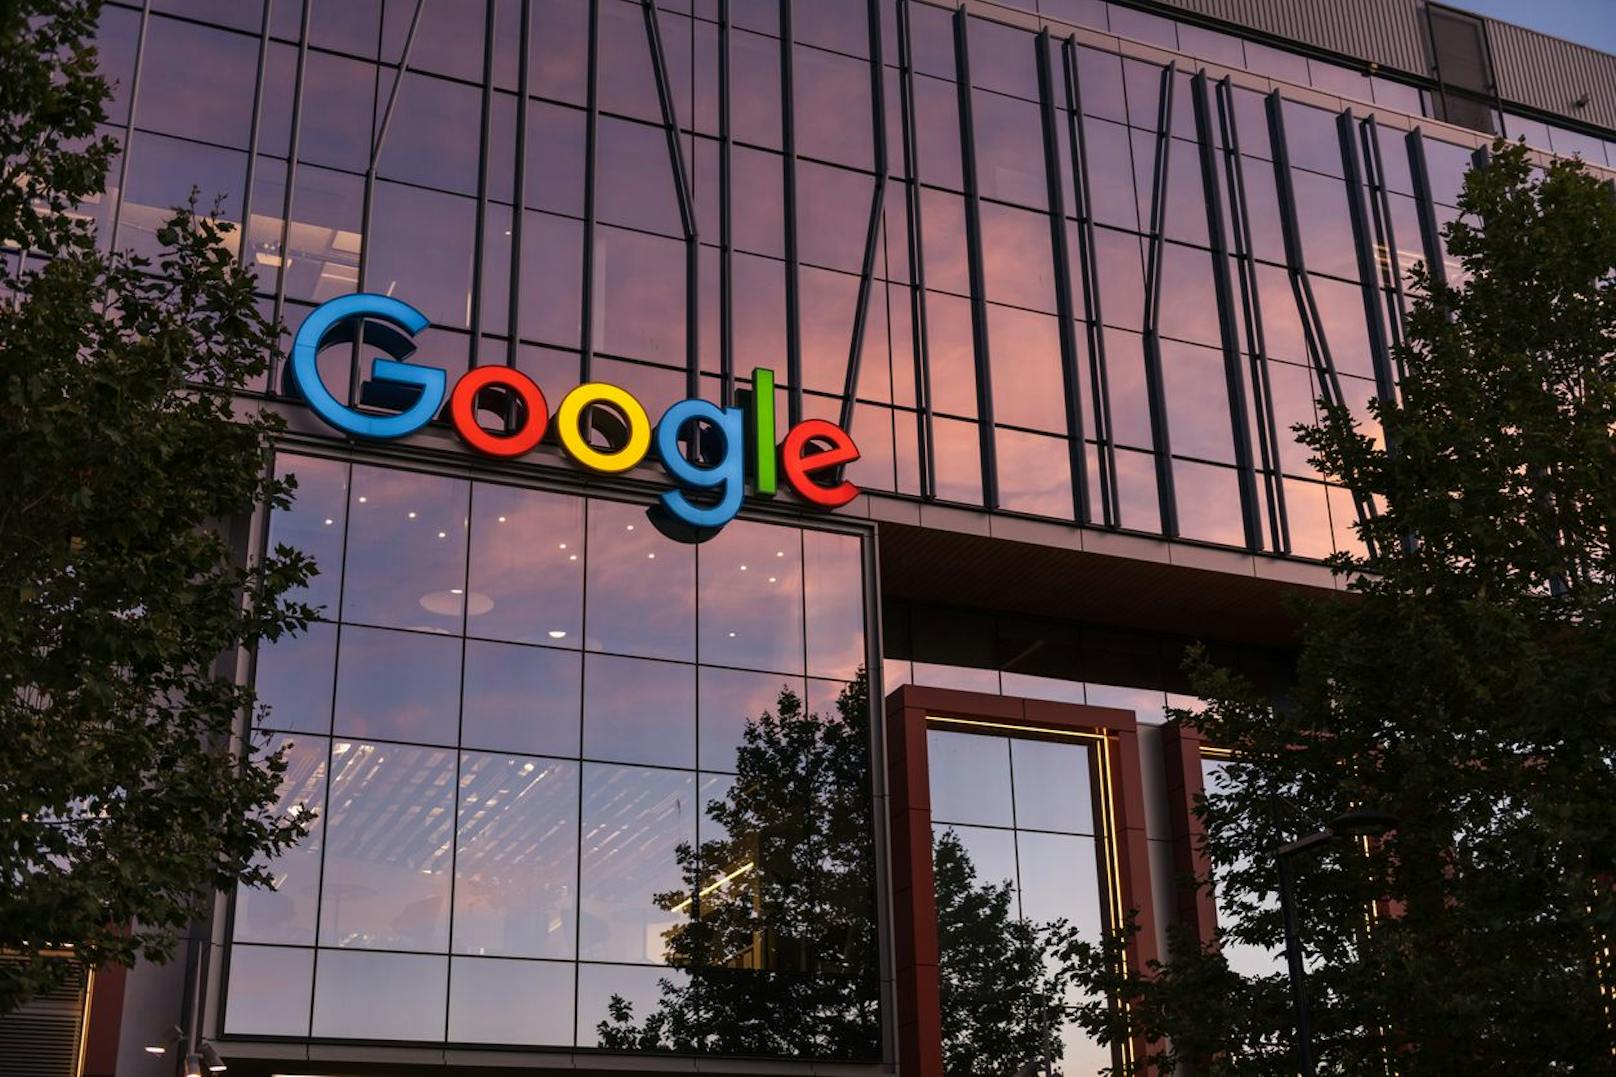 Kurios: Darum kappt Google Onlinezugang der Mitarbeiter